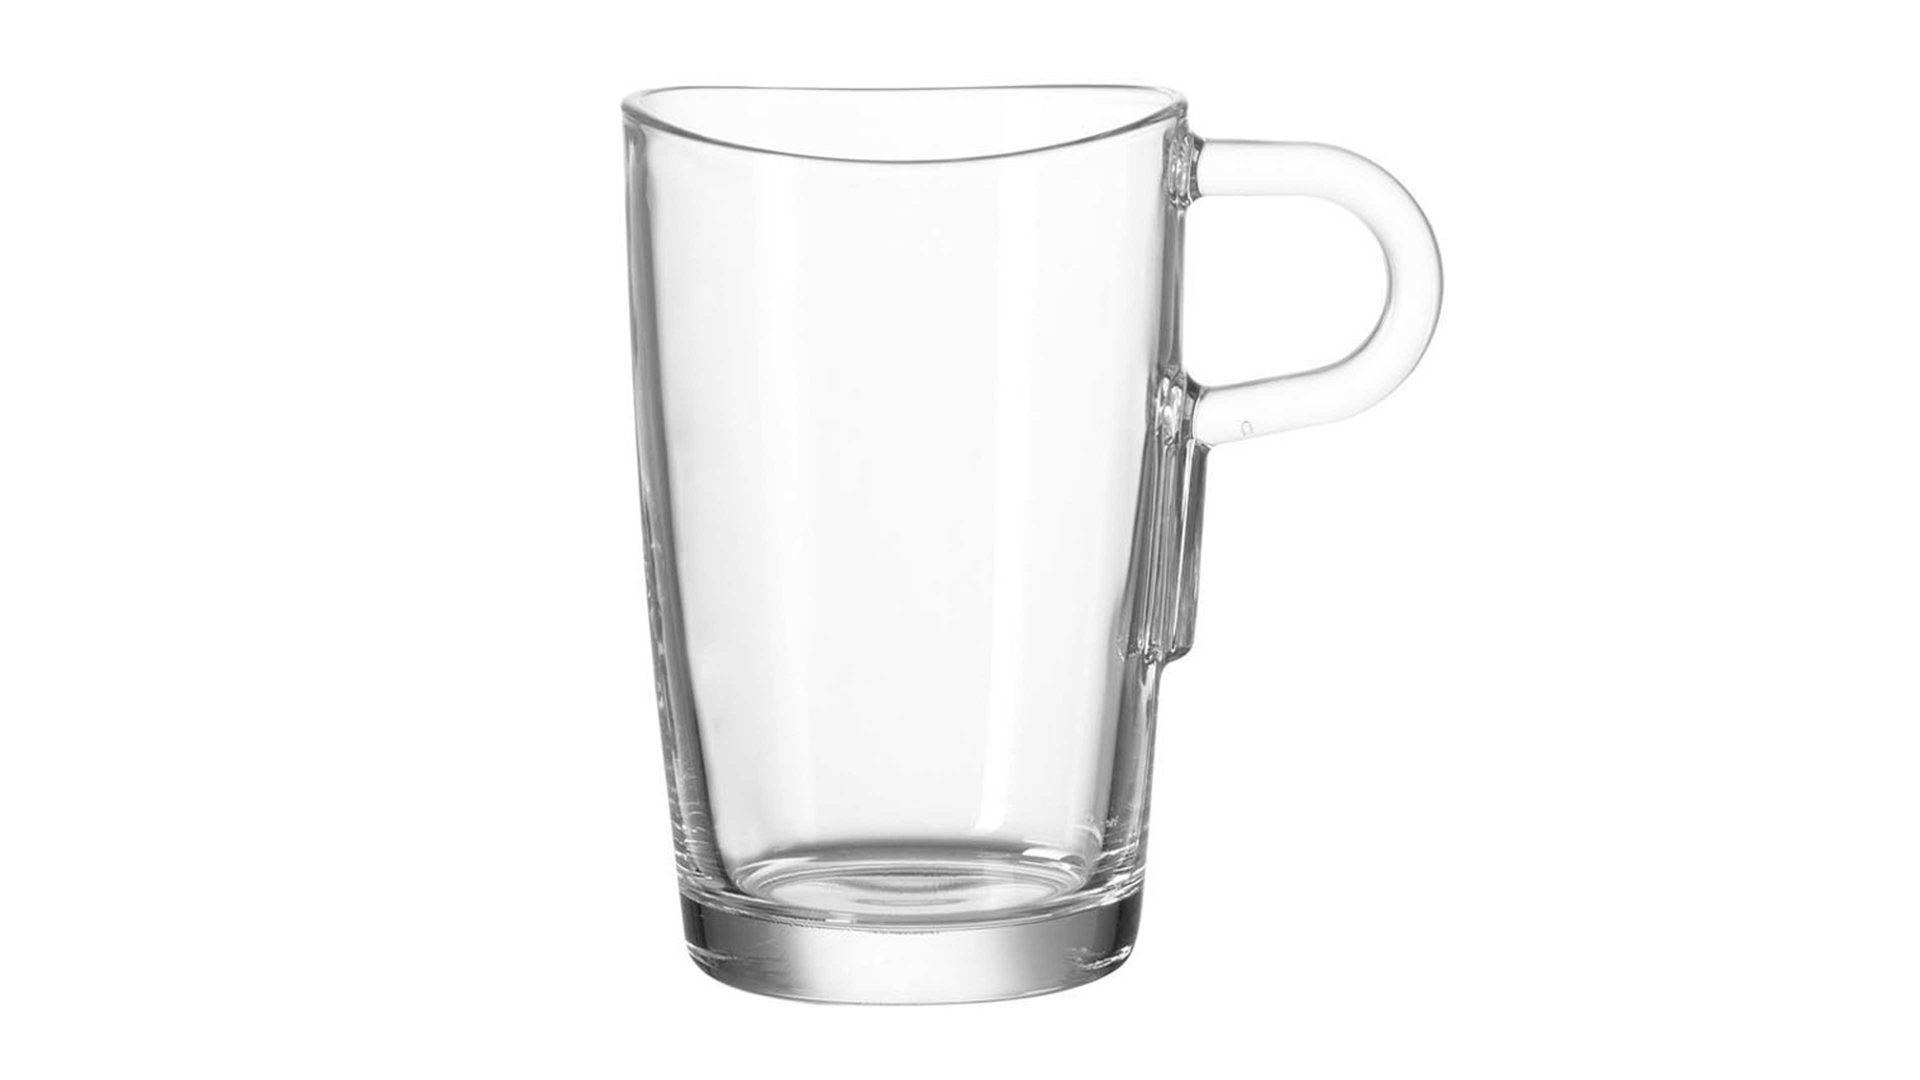 Kaffeebecher Leonardo | glaskoch aus Glas in Transparent LEONARDO Latte Macchiato-Becher Loop Klarglas - ca. 250 ml Nutzinhalt